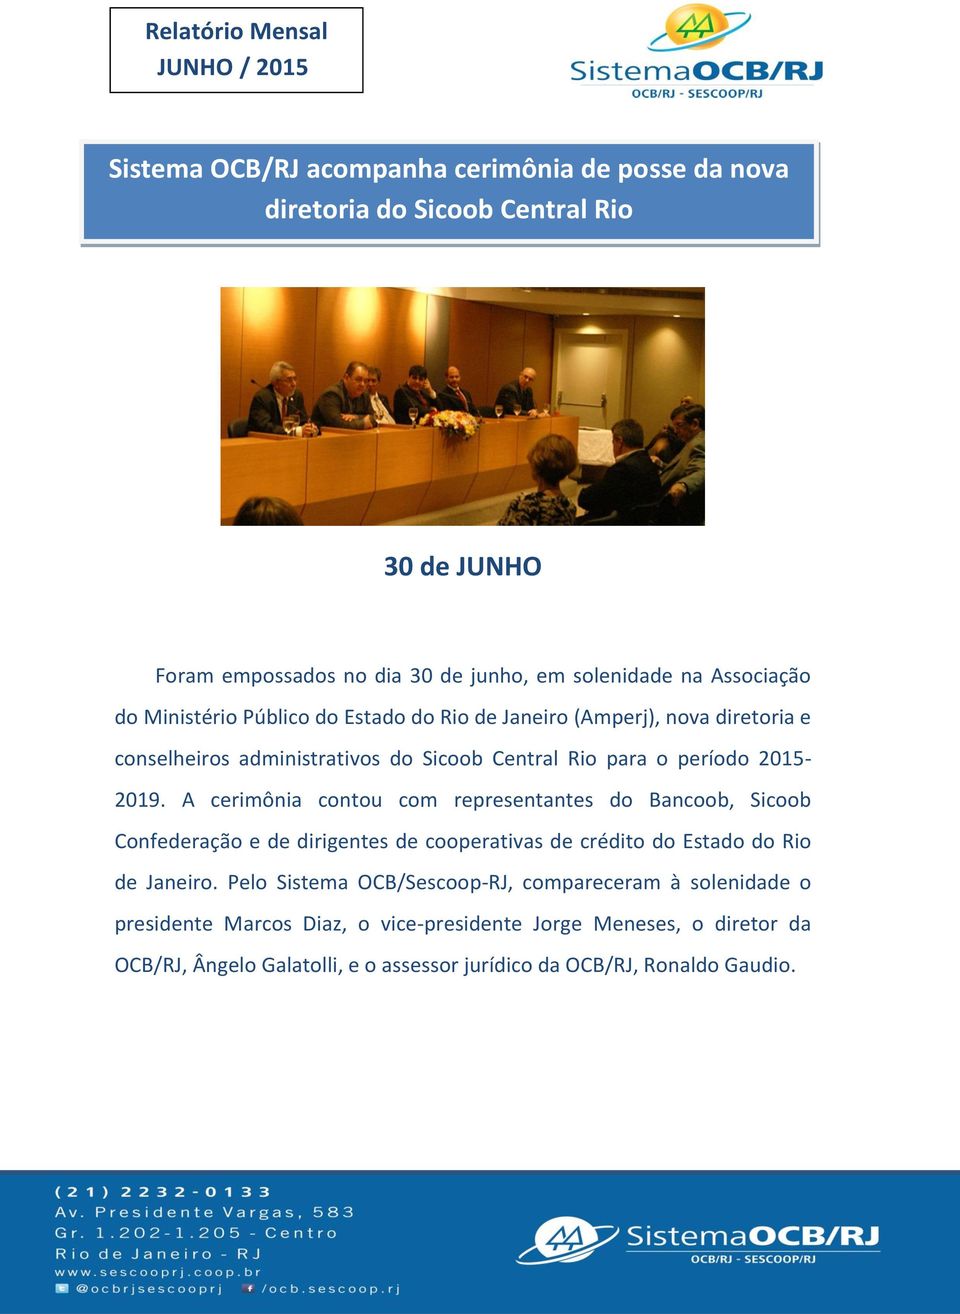 A cerimônia contou com representantes do Bancoob, Sicoob Confederação e de dirigentes de cooperativas de crédito do Estado do Rio de Janeiro.